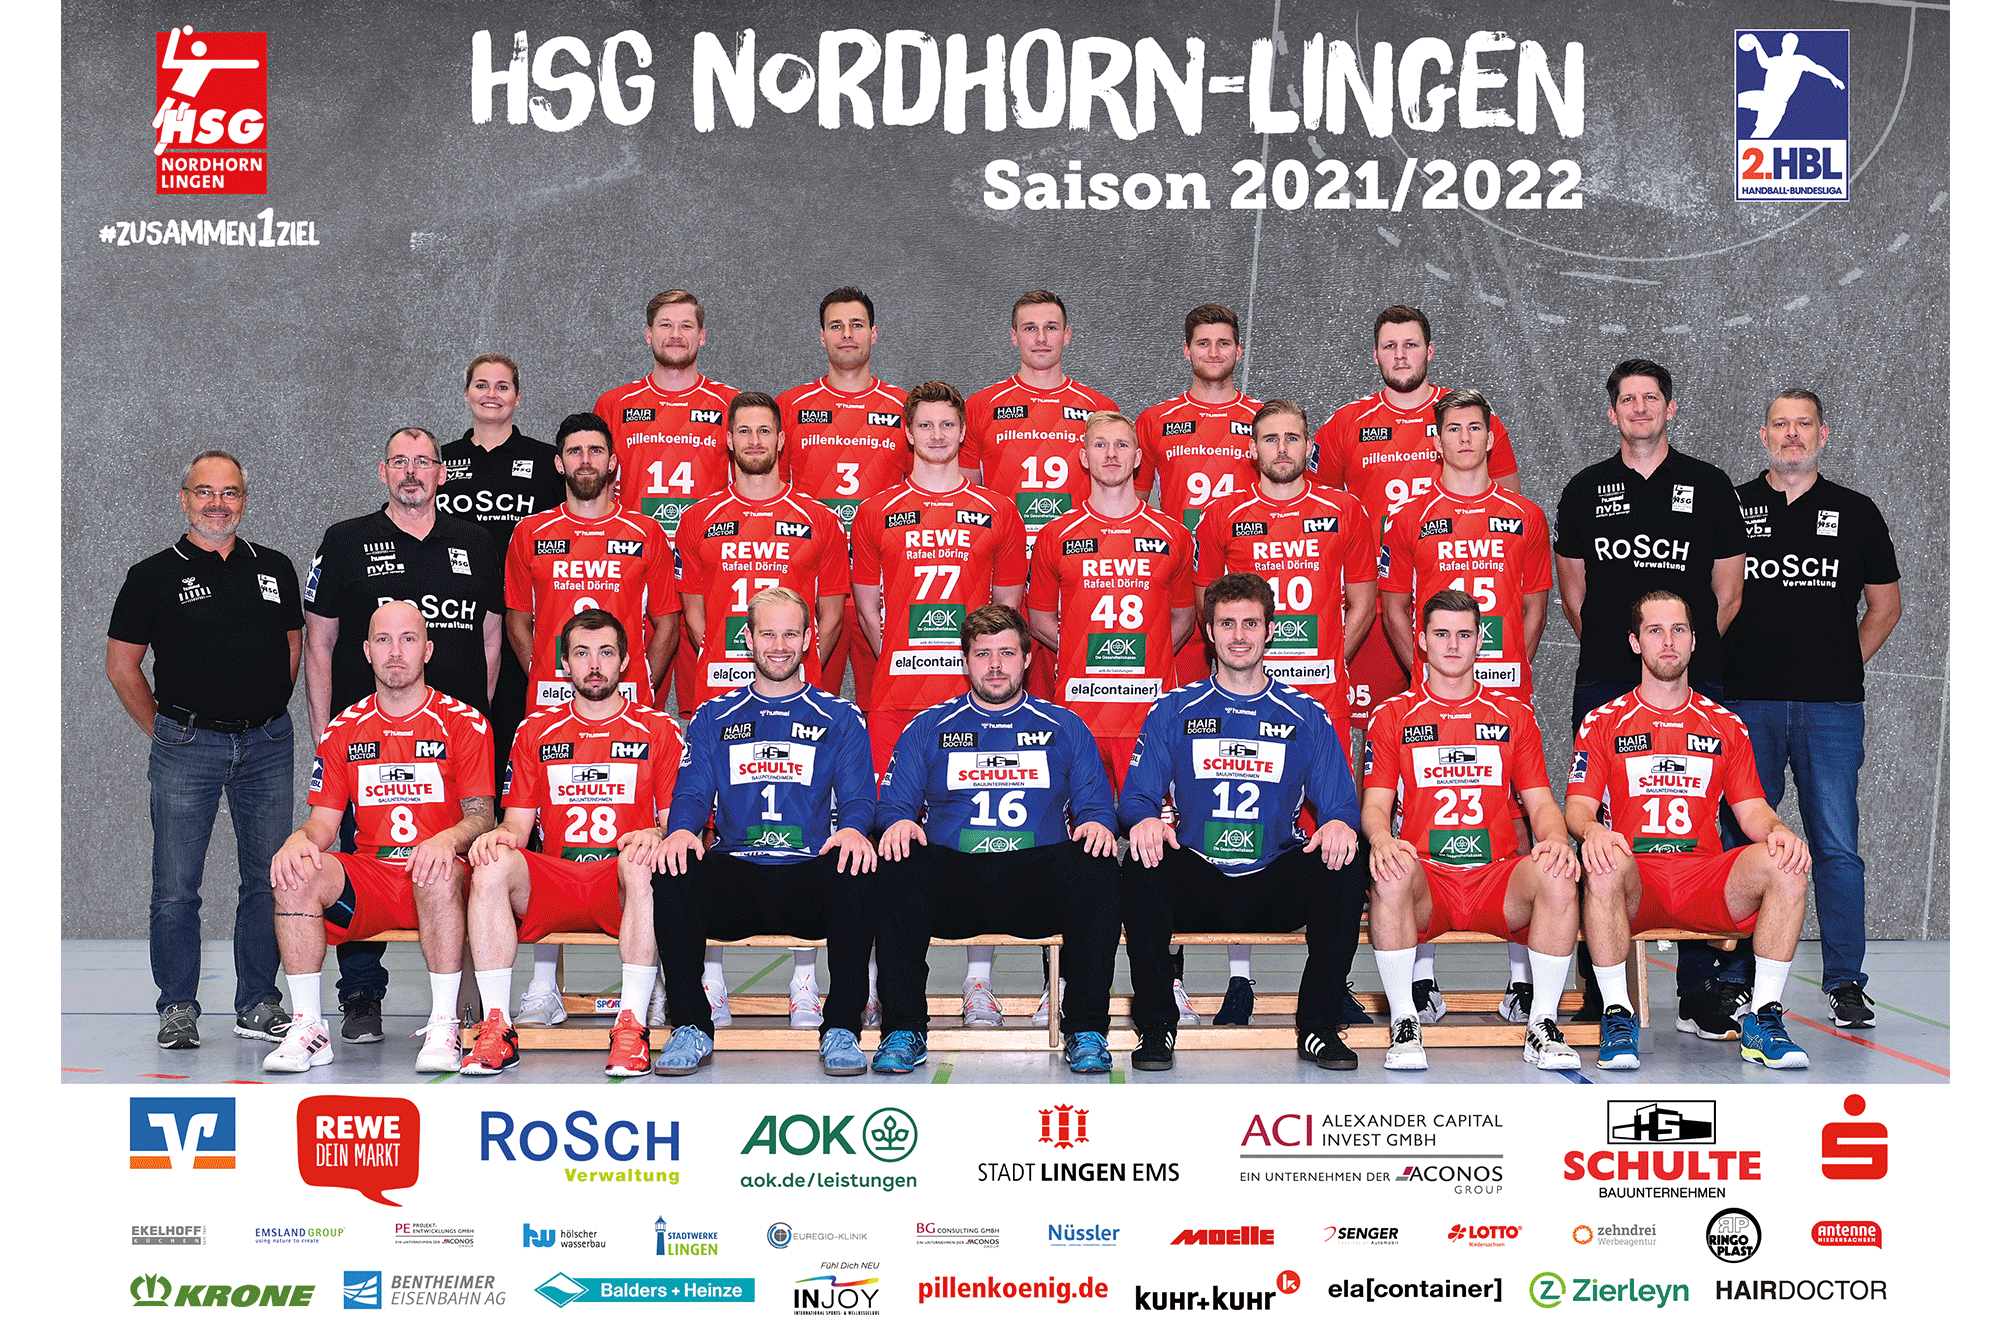 Mannschaftsbild der Handballmannschaft HSG Nordhorn-Lingen der Saison 2021/2022.